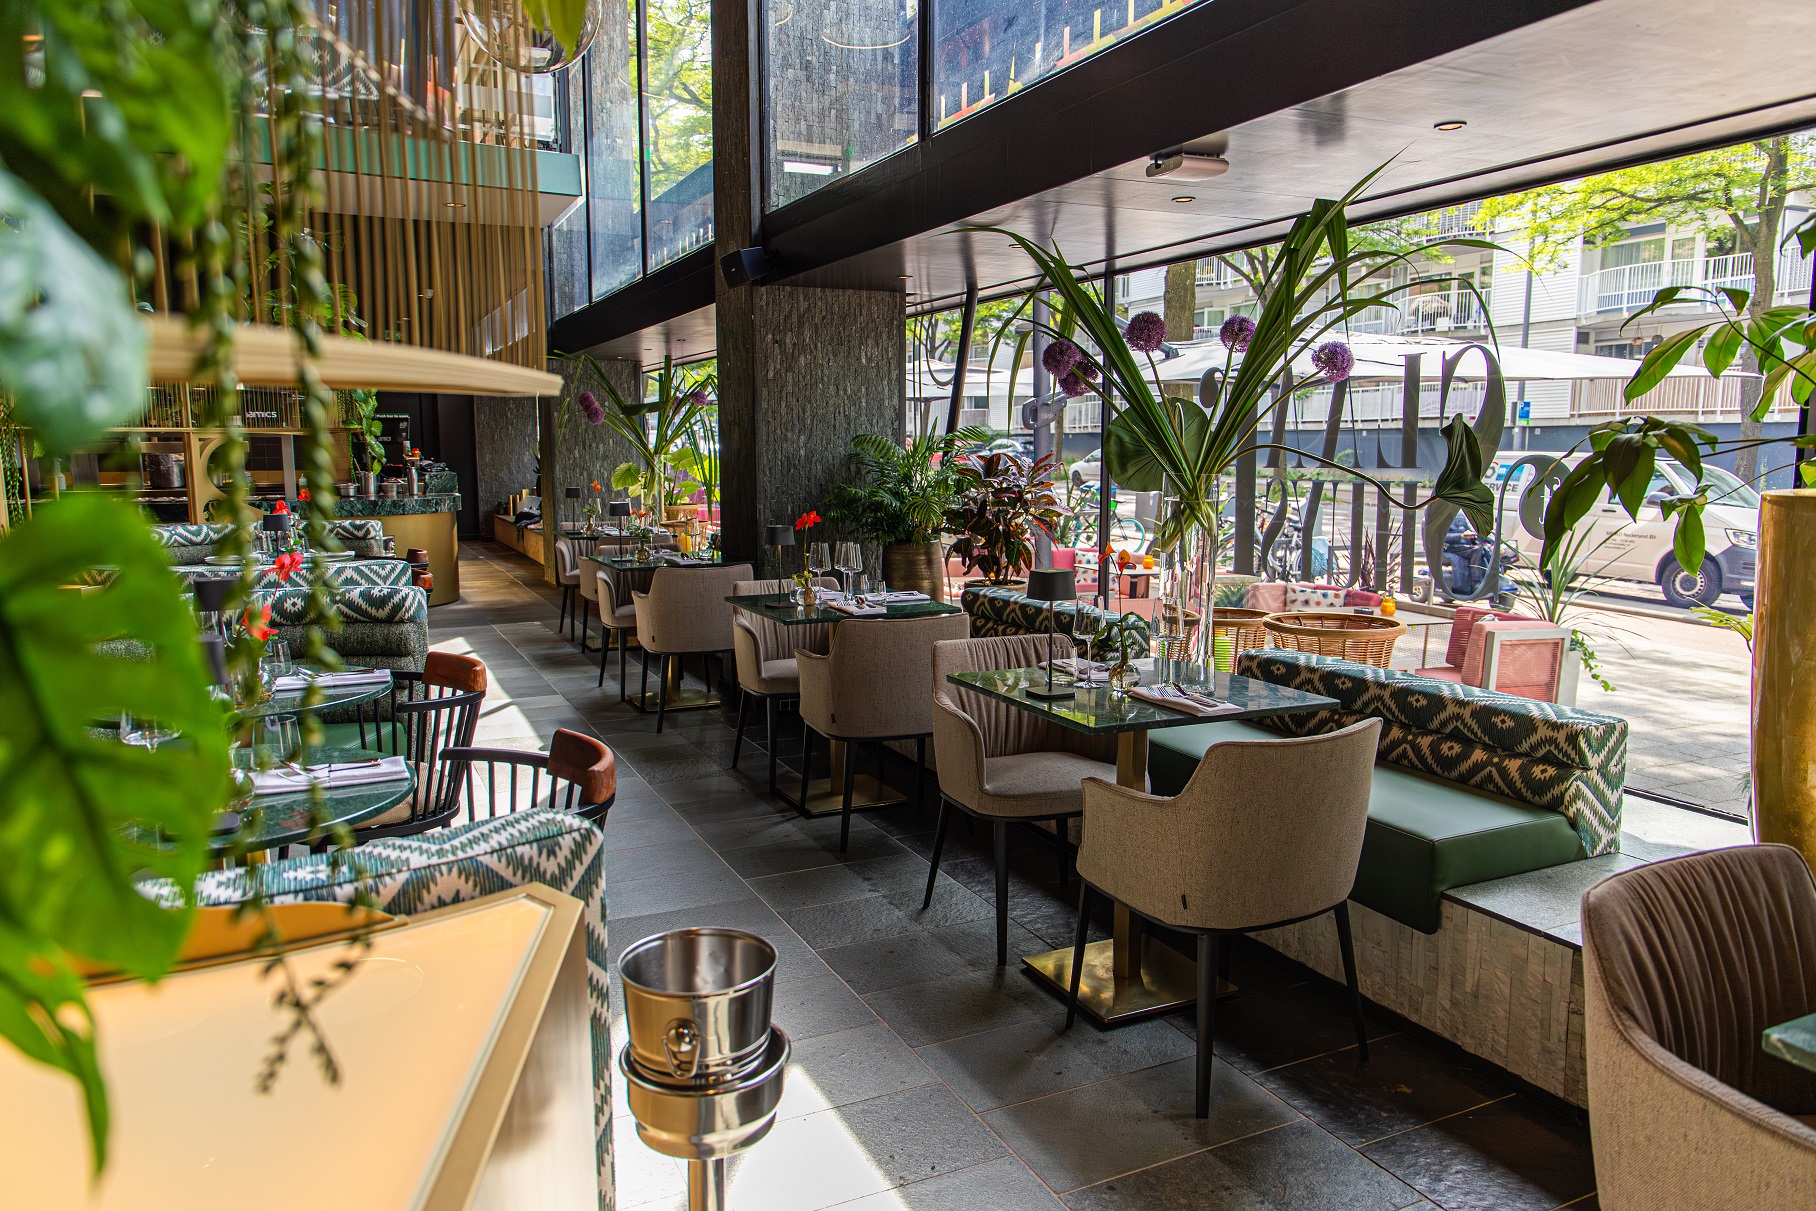 Restaurant ’t Slaakhuys opent haar deuren in Rotterdam